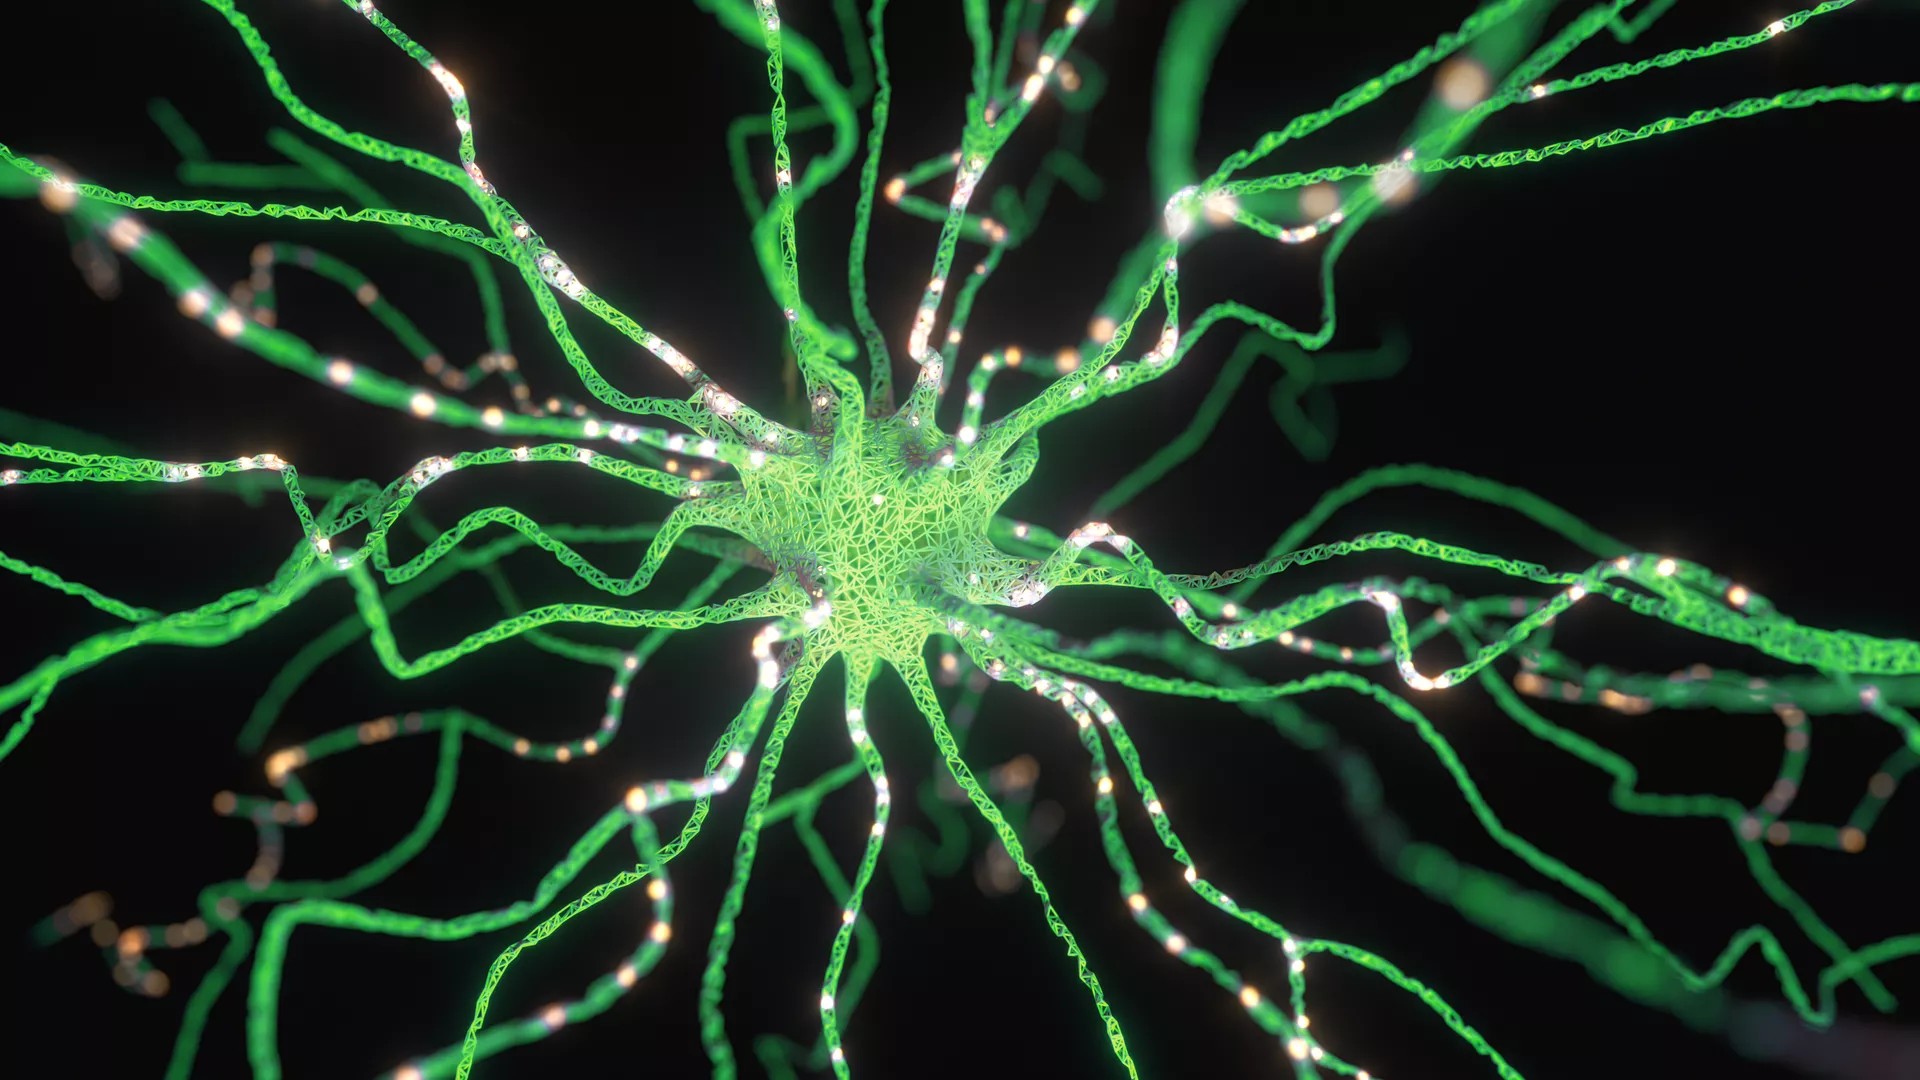 Cover image for "Focus on Methods: Neural Algorithms for Bio-Inspired Robotics"